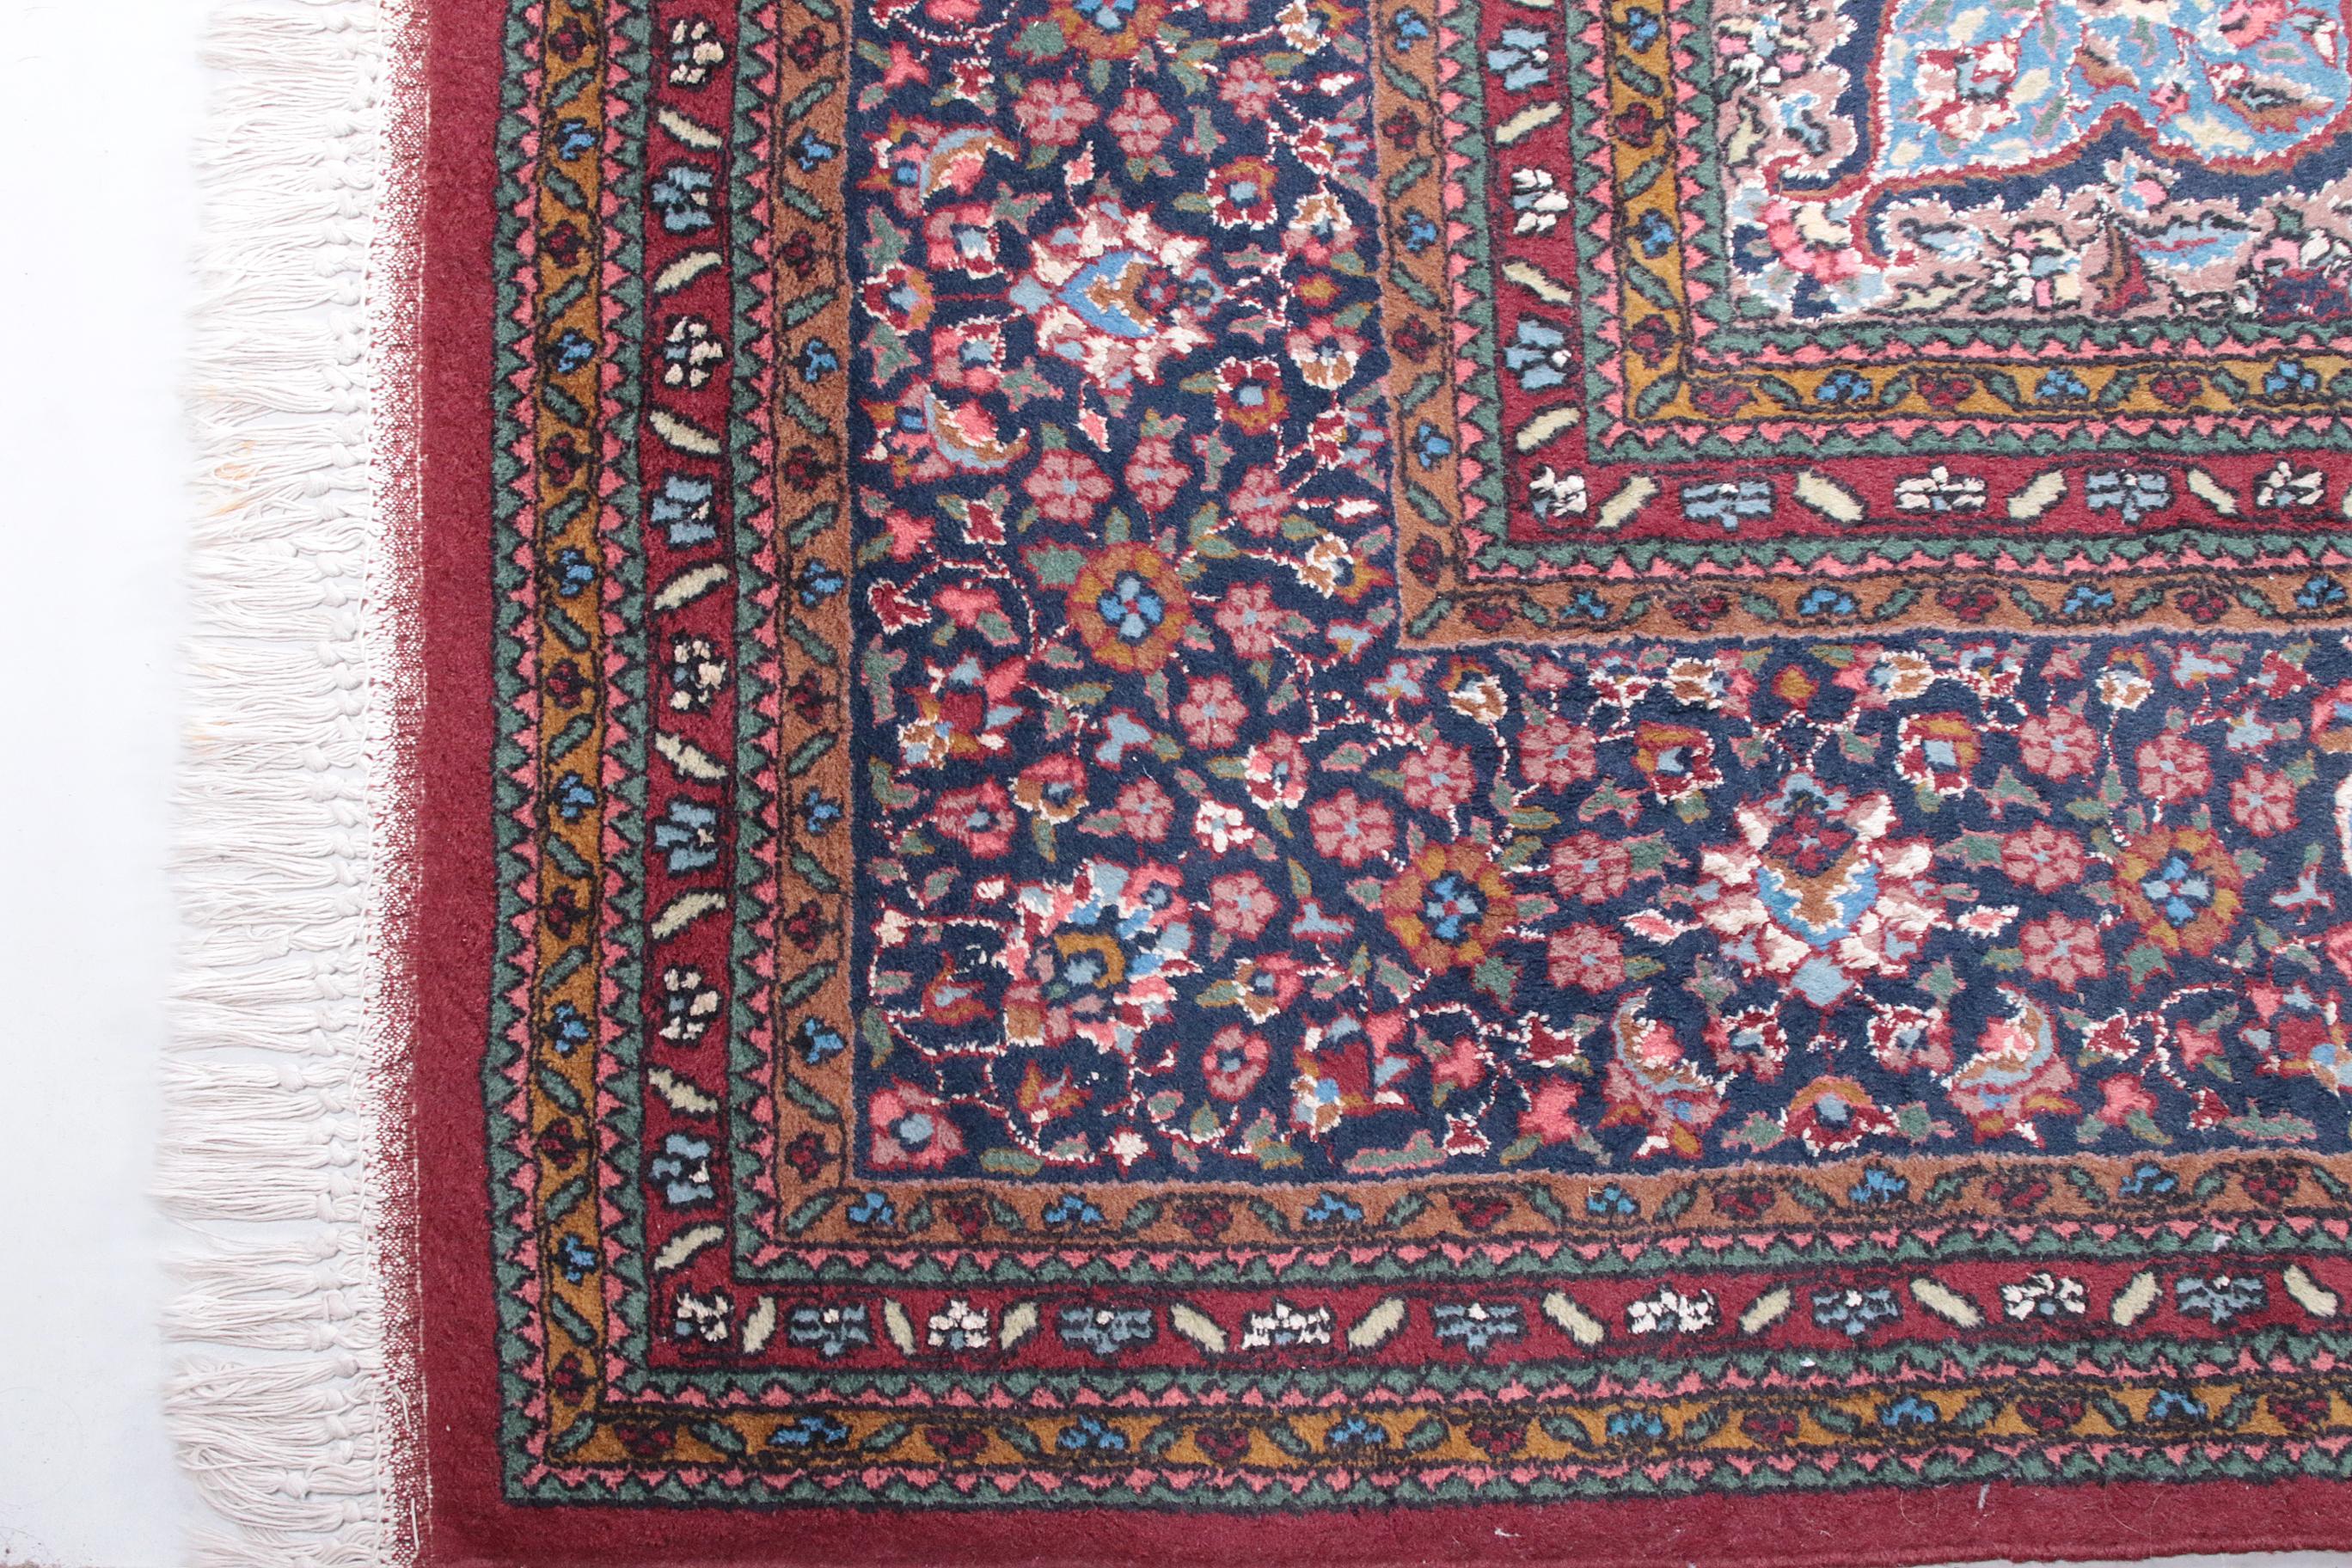 Dieser wunderschöne persische Bidjar-Teppich hat 400.000 Knoten pro Quadratmeter. Er ist ein schönes und typisches Beispiel für einen Bidjar-Teppich. Im Gegensatz zu den Teppichen anderer Nomadenvölker ist der Bidjar aufgrund seiner Struktur eine